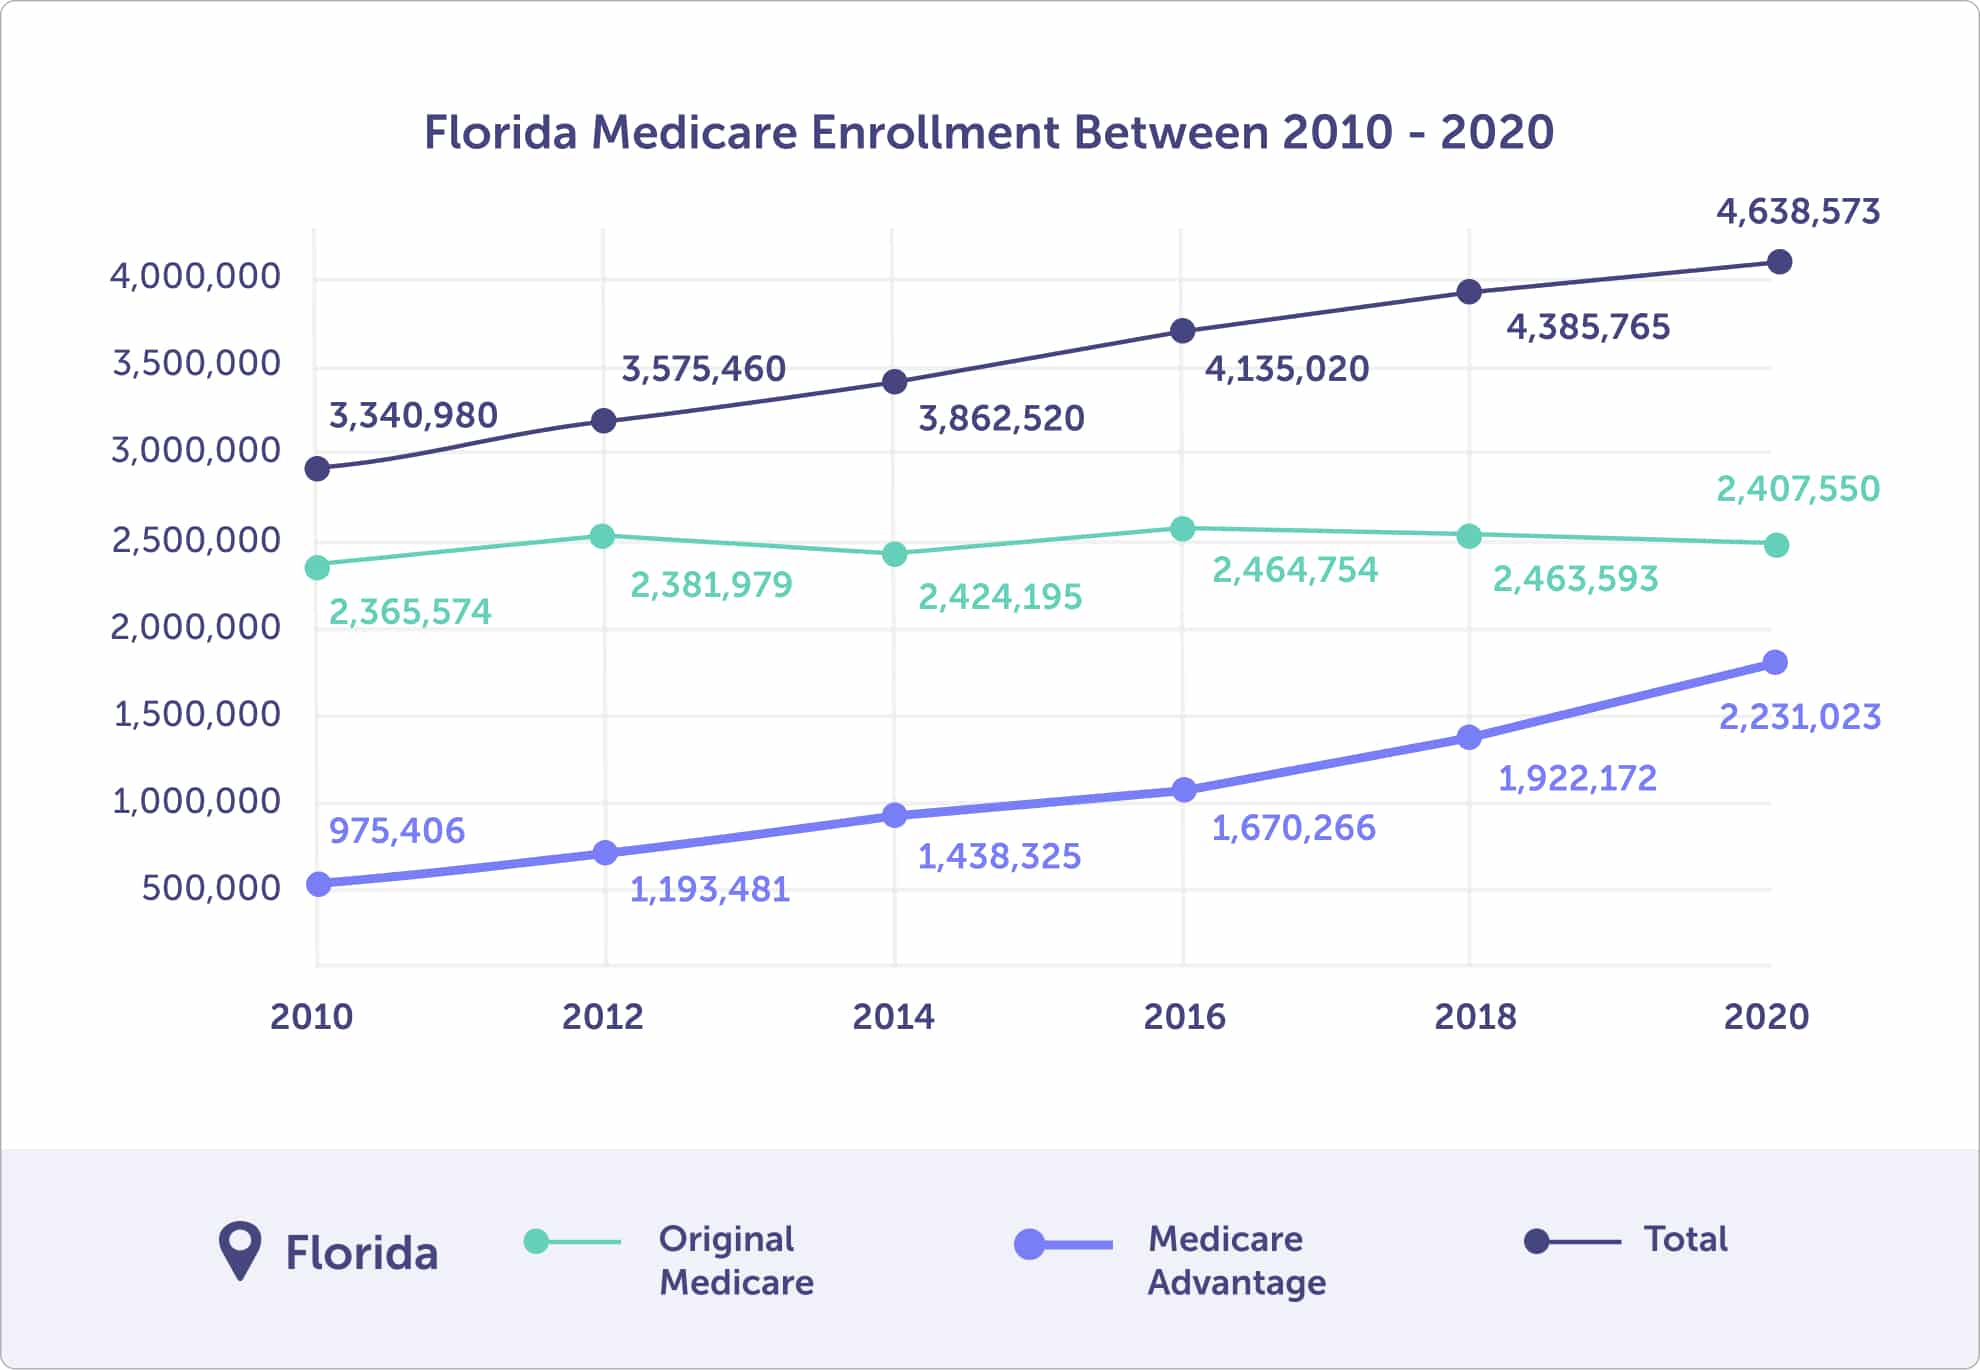 Florida Medicare enrollment between 2010 - 2020